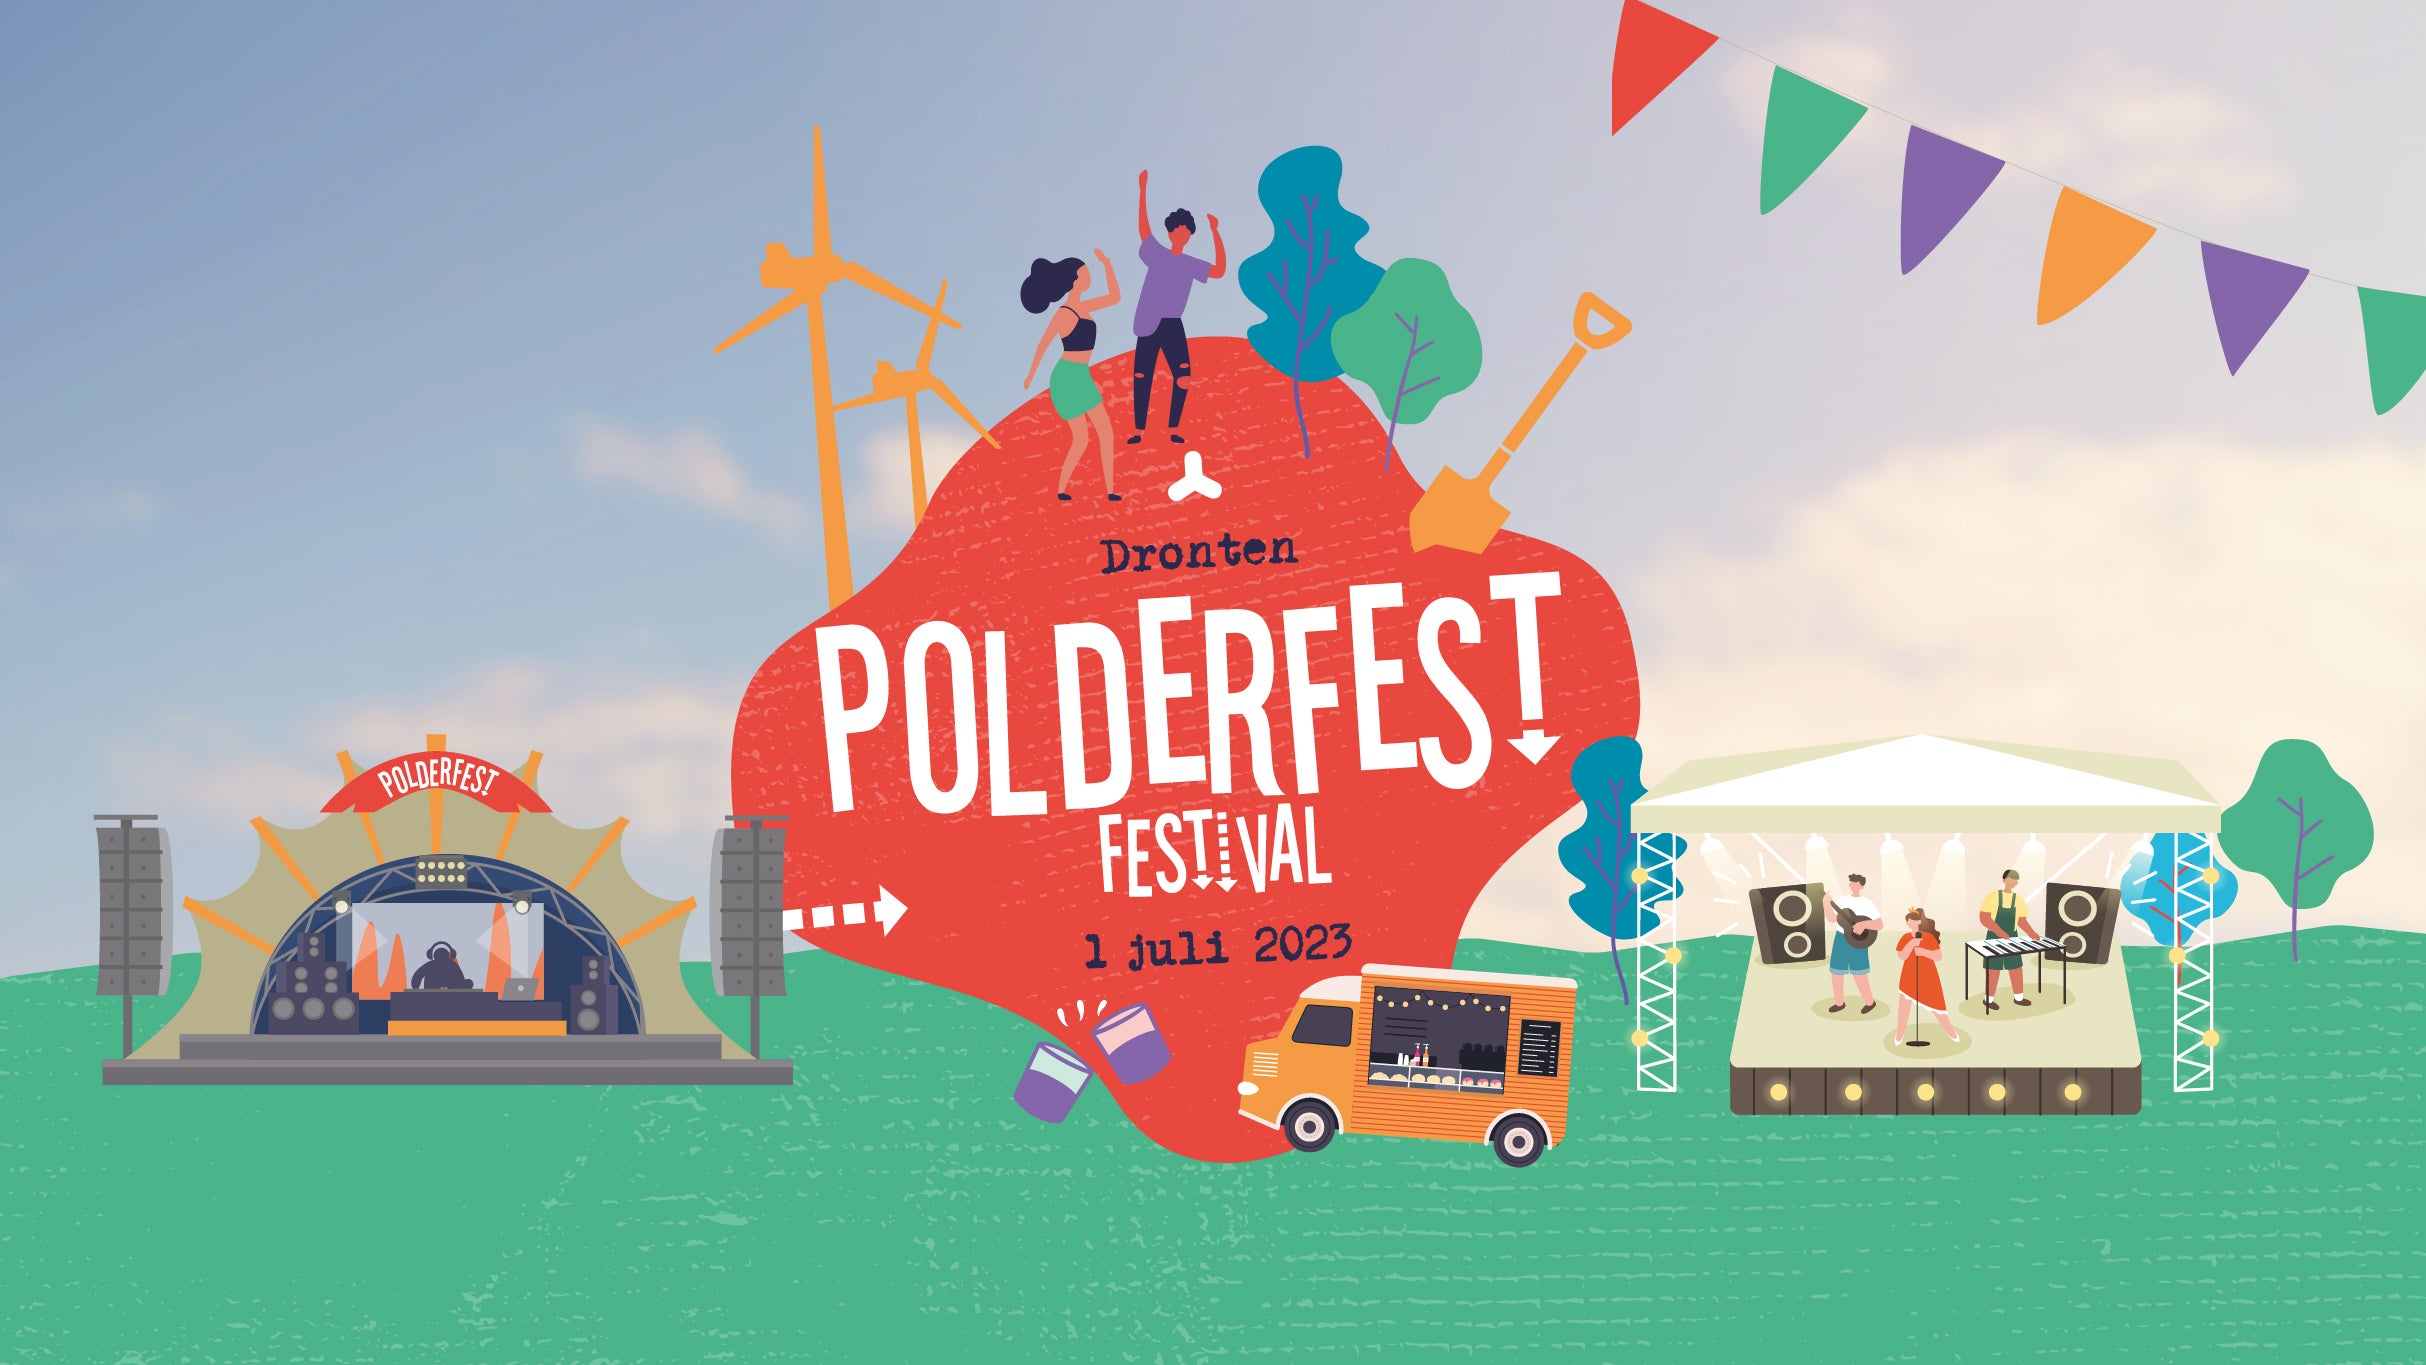 Polderfest Festival presale information on freepresalepasswords.com